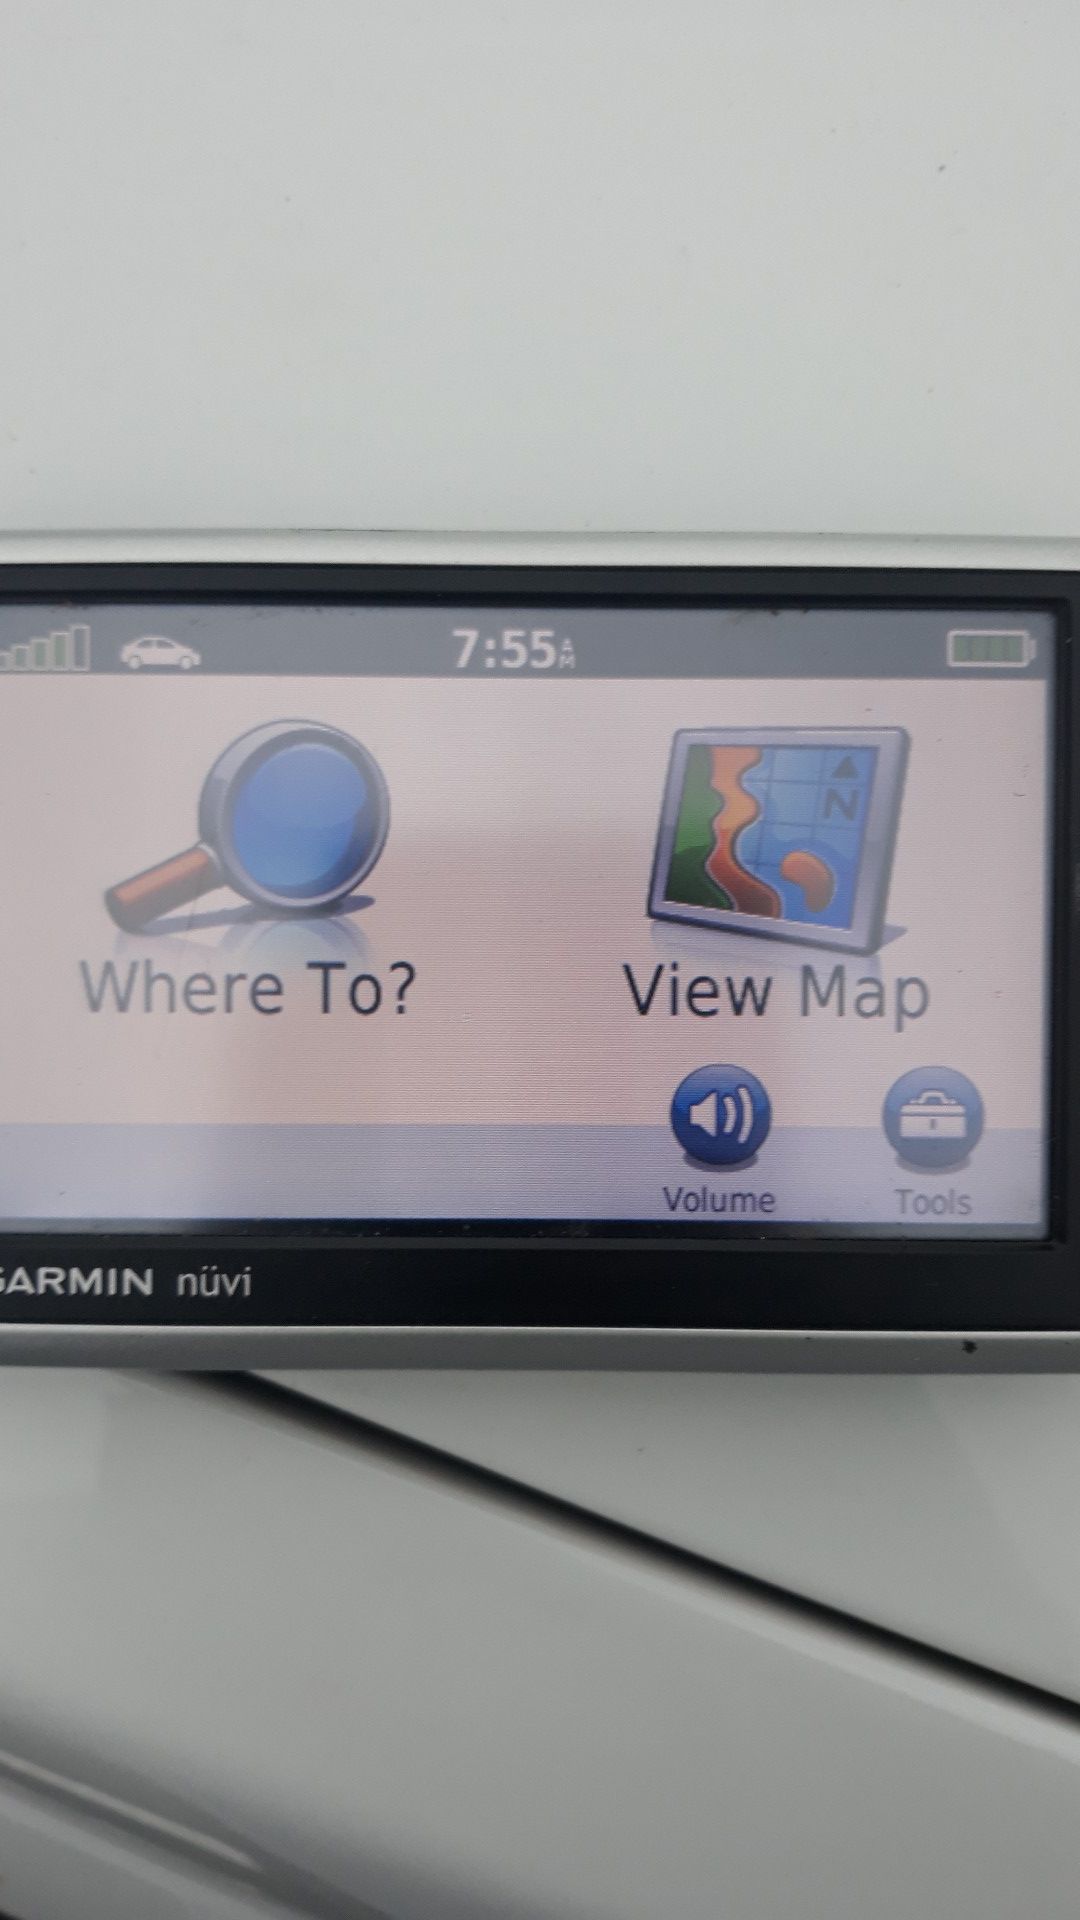 Garmin nuvi 1300 4.3in Widescreen Portable GPS navigator